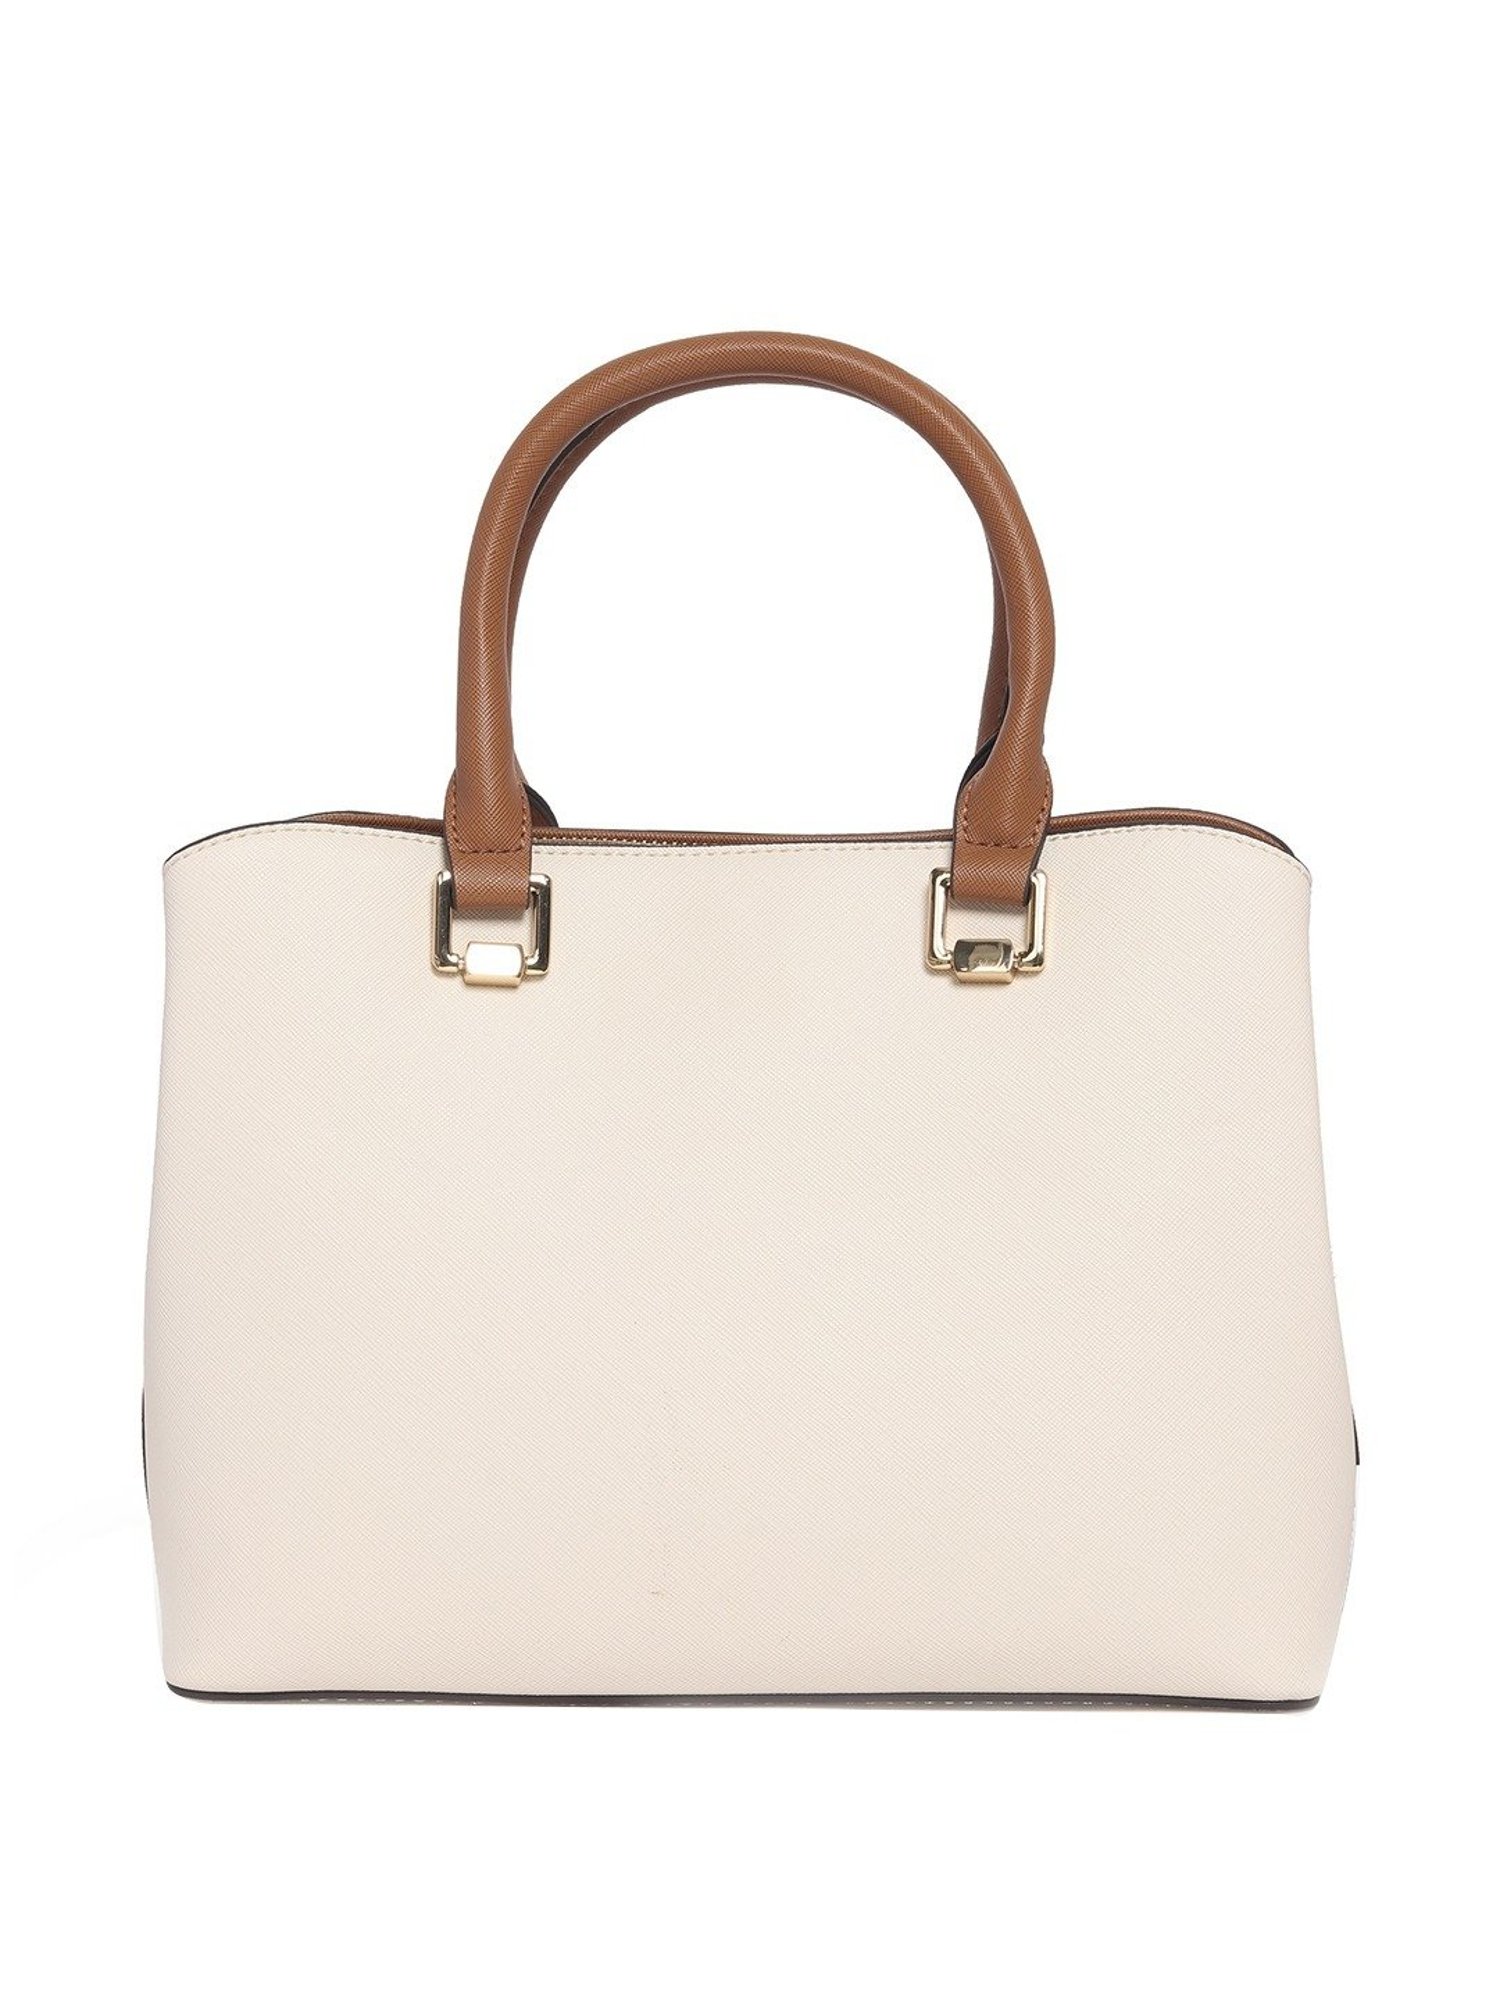 ALDO CADY Top Handle Handbag - Trend Hub